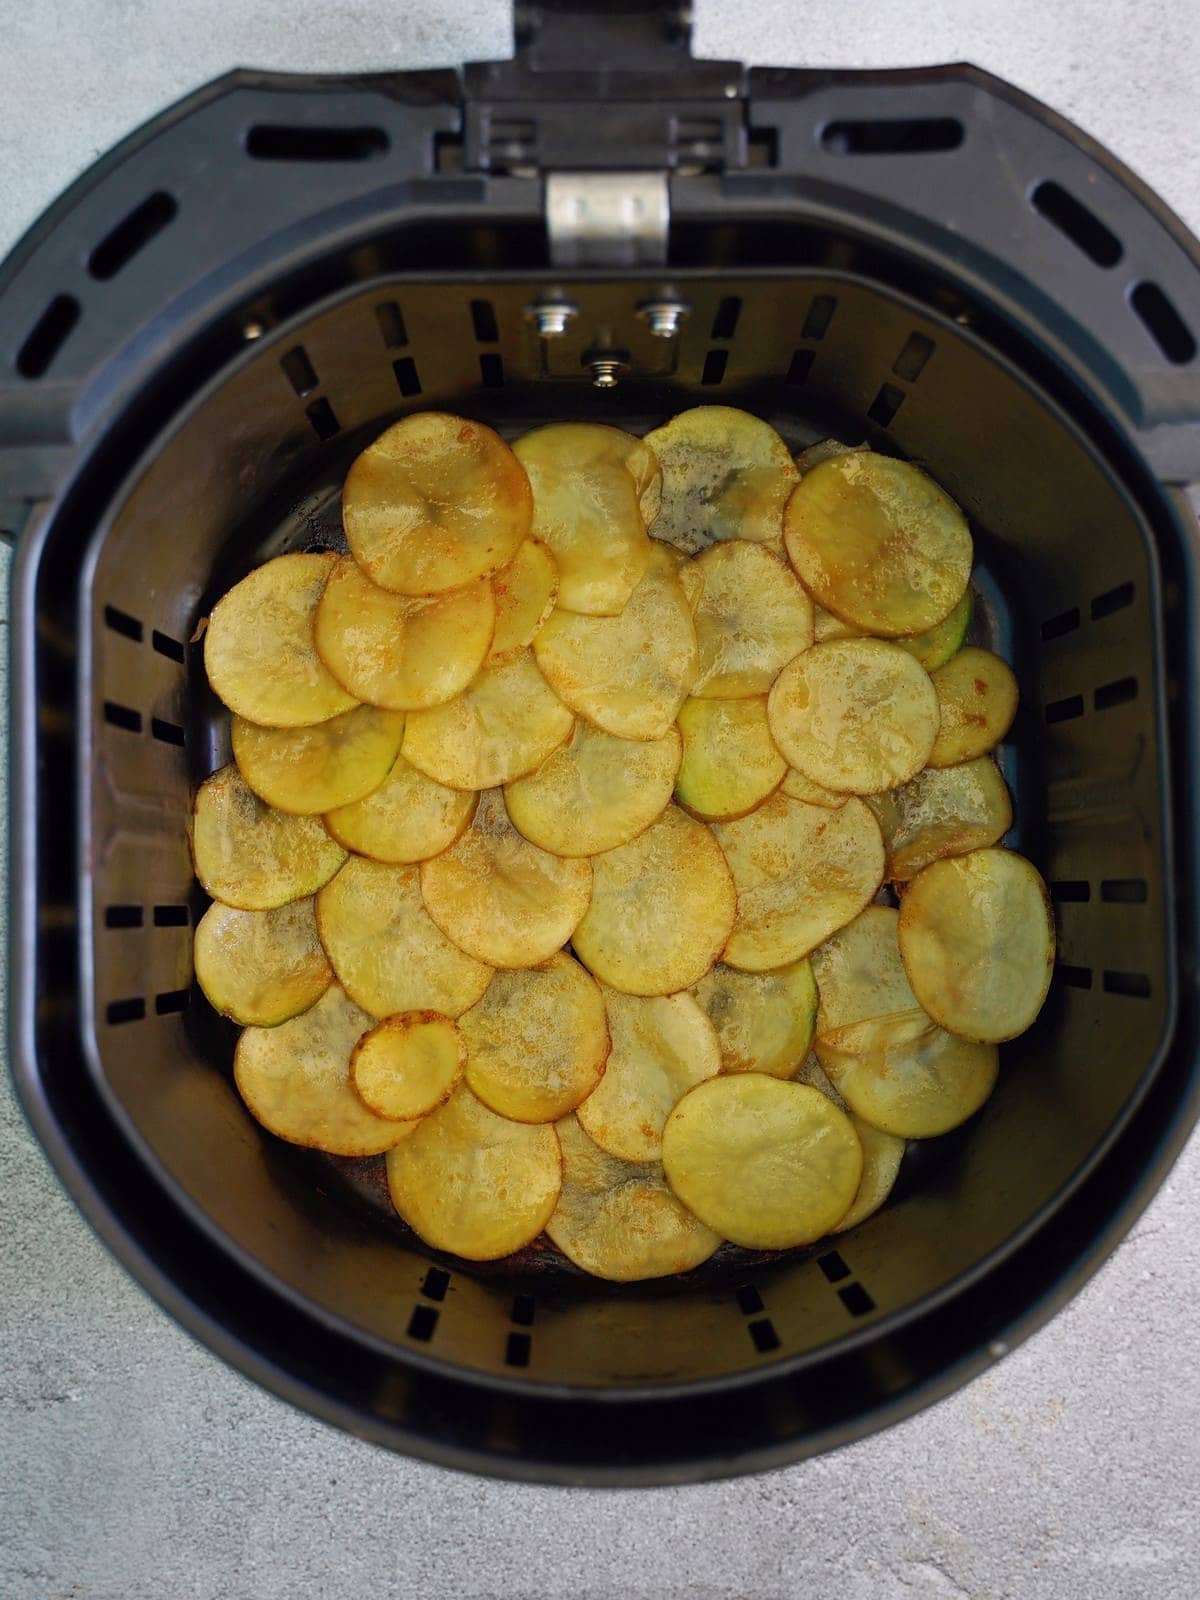 sliced potatoes in air fryer